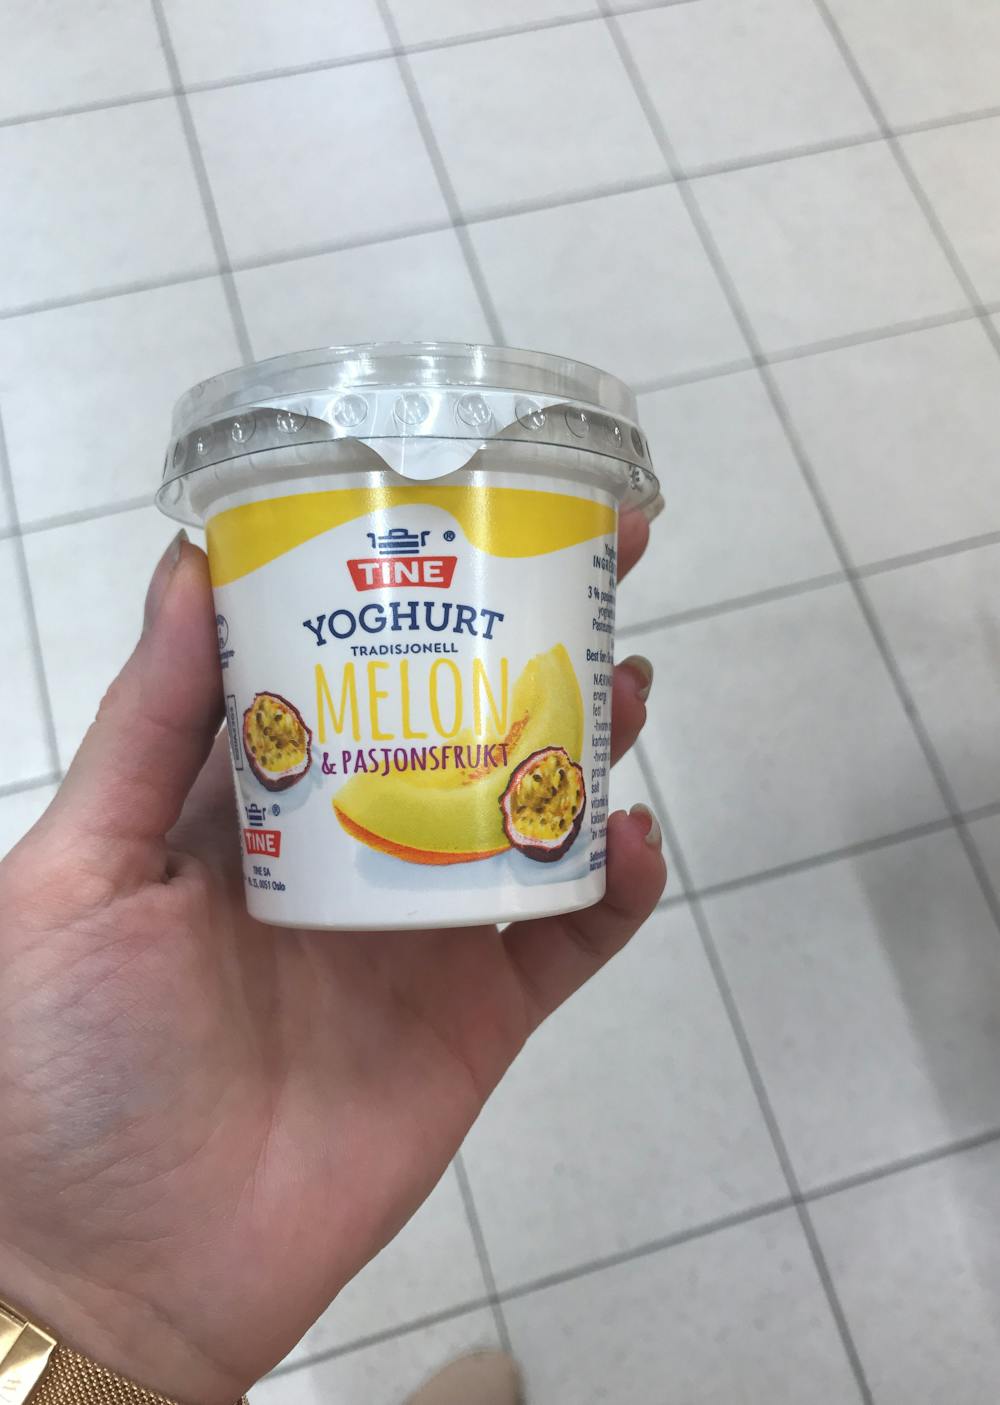 Yoghurt melon & pasjonsfrukt 180g, Tine